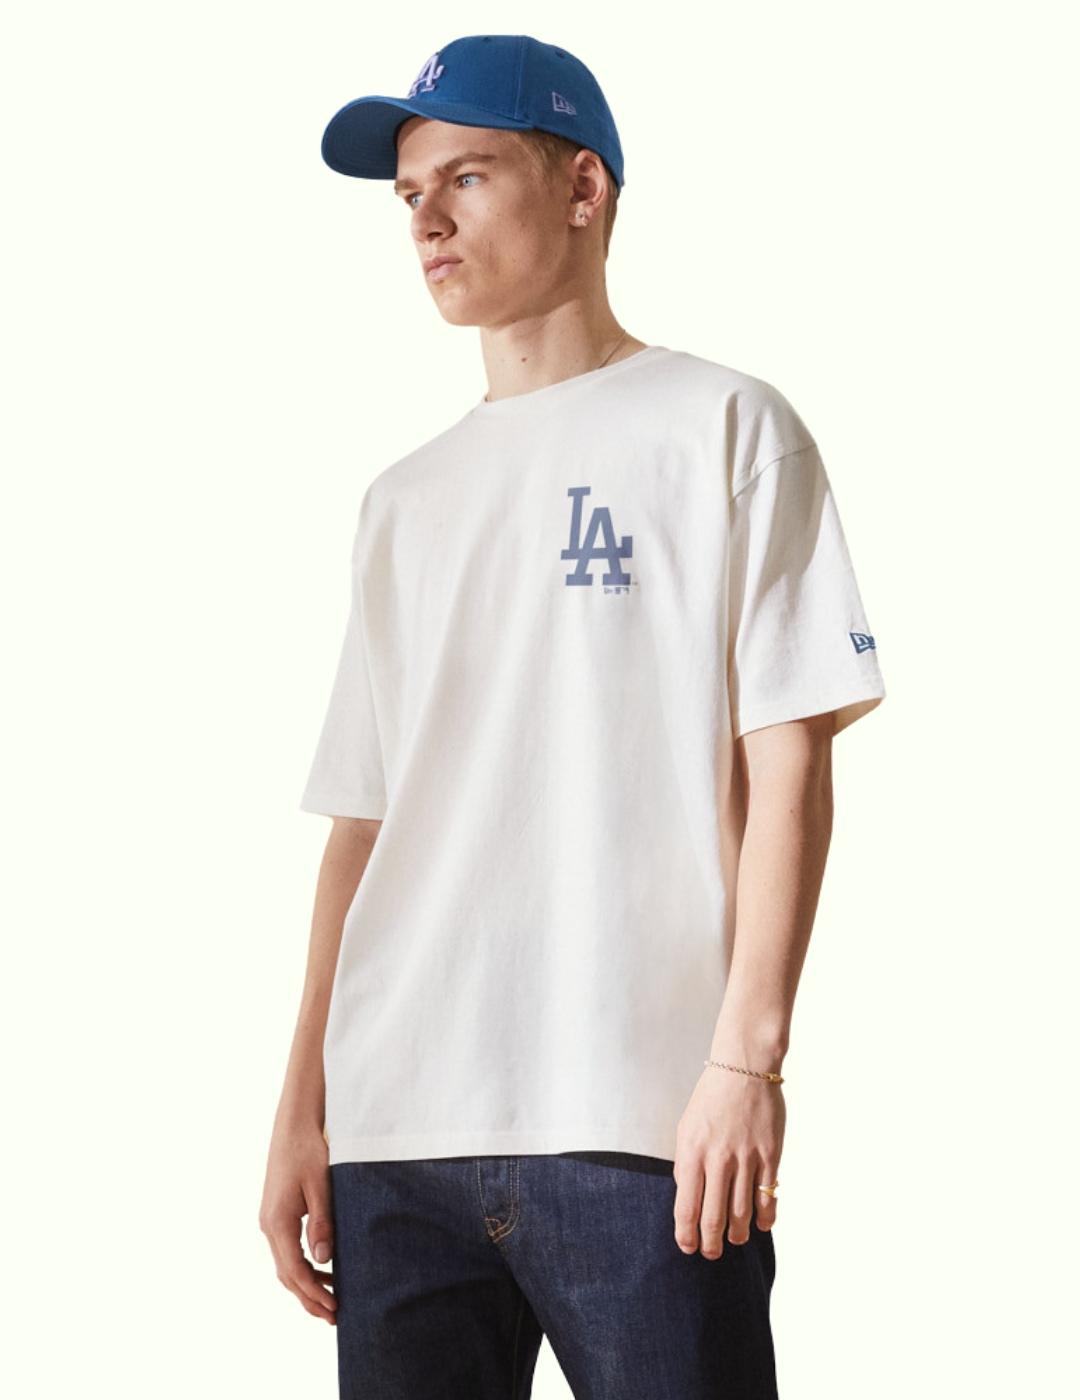 camiseta new era LA dodgers blanco azul de hombre.